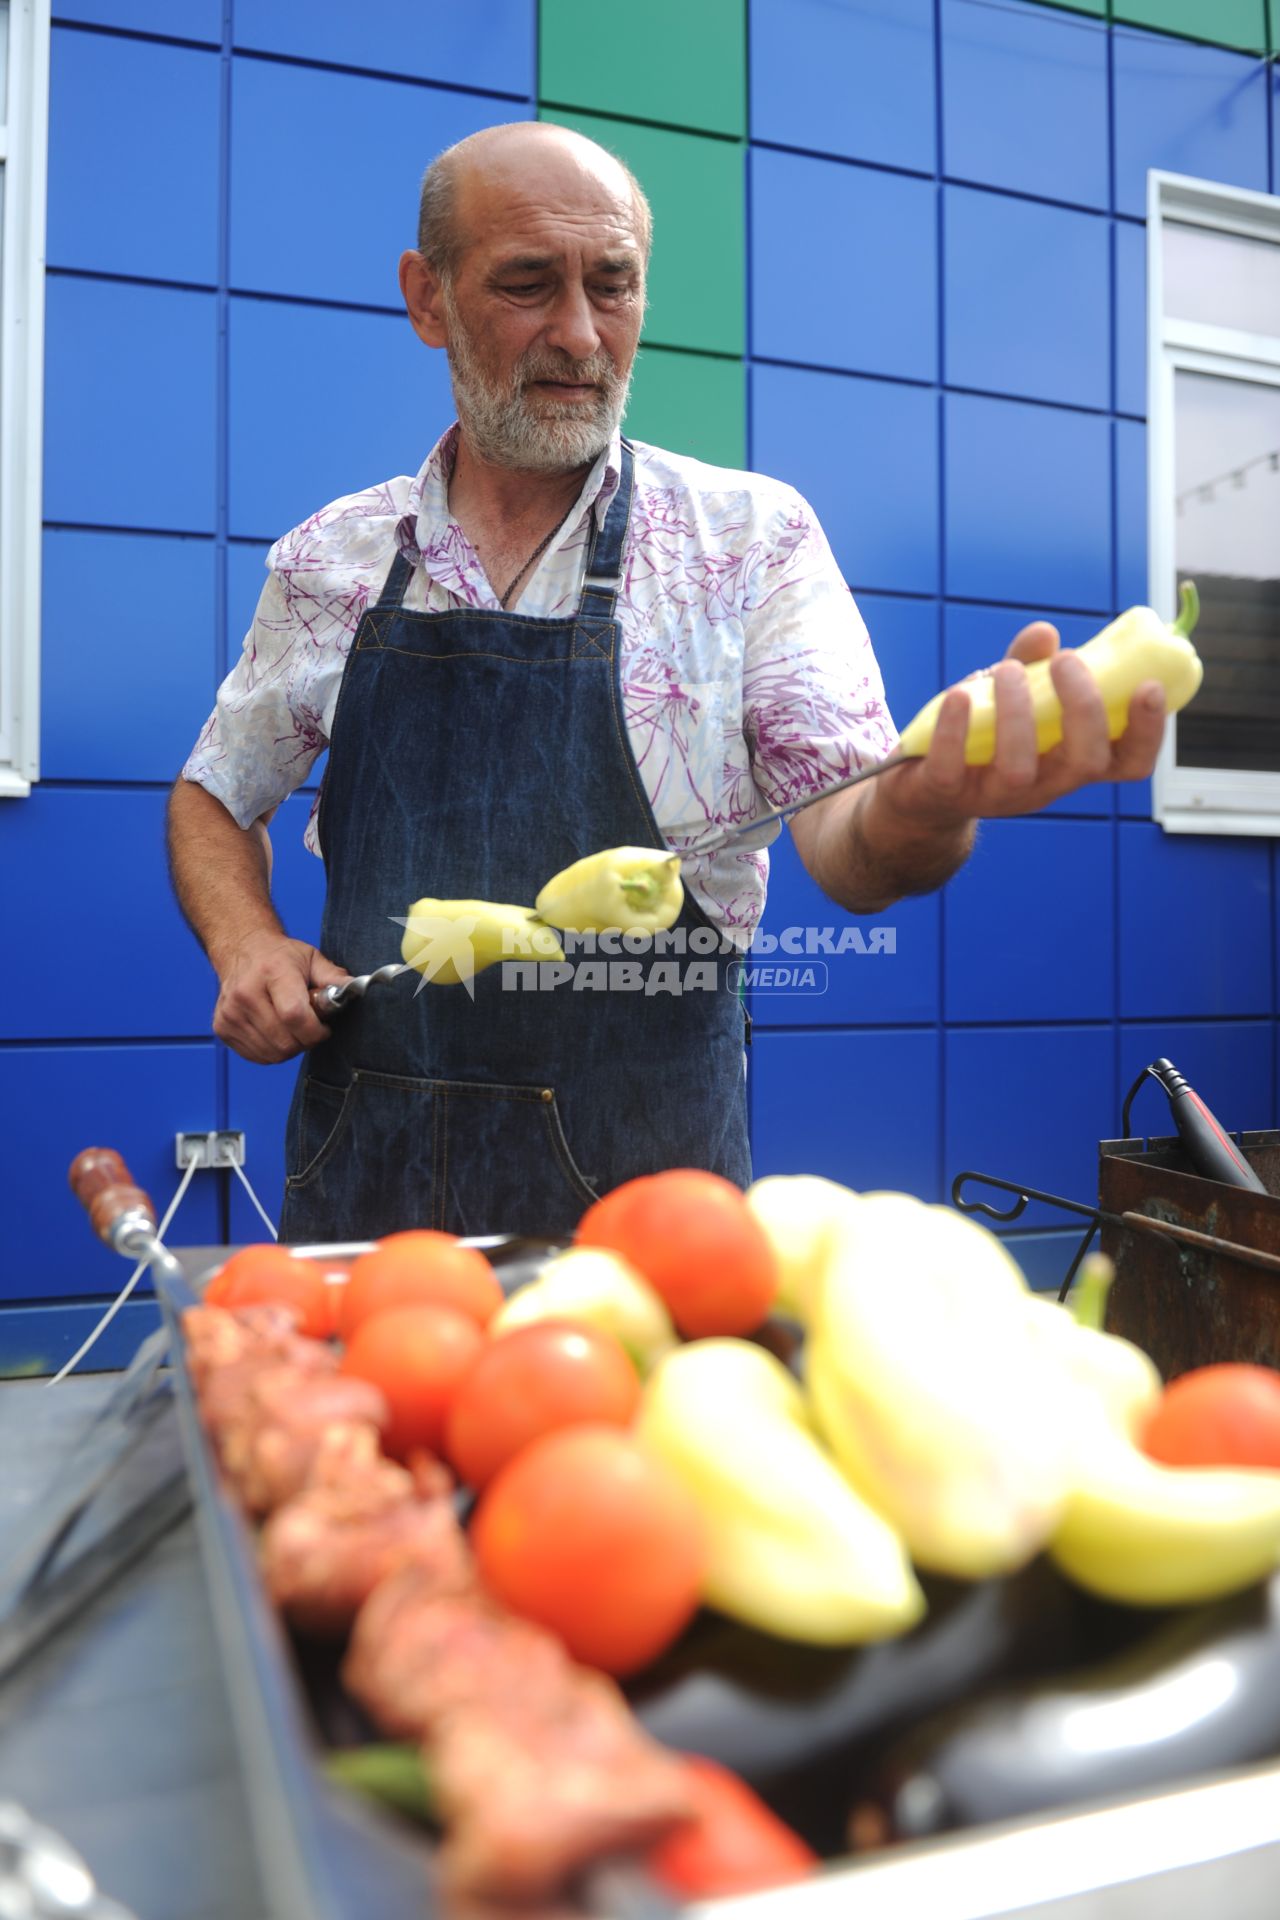 Санкт-Петербург. Шашлычник нанизывает перец на шампур на Южном рынке.